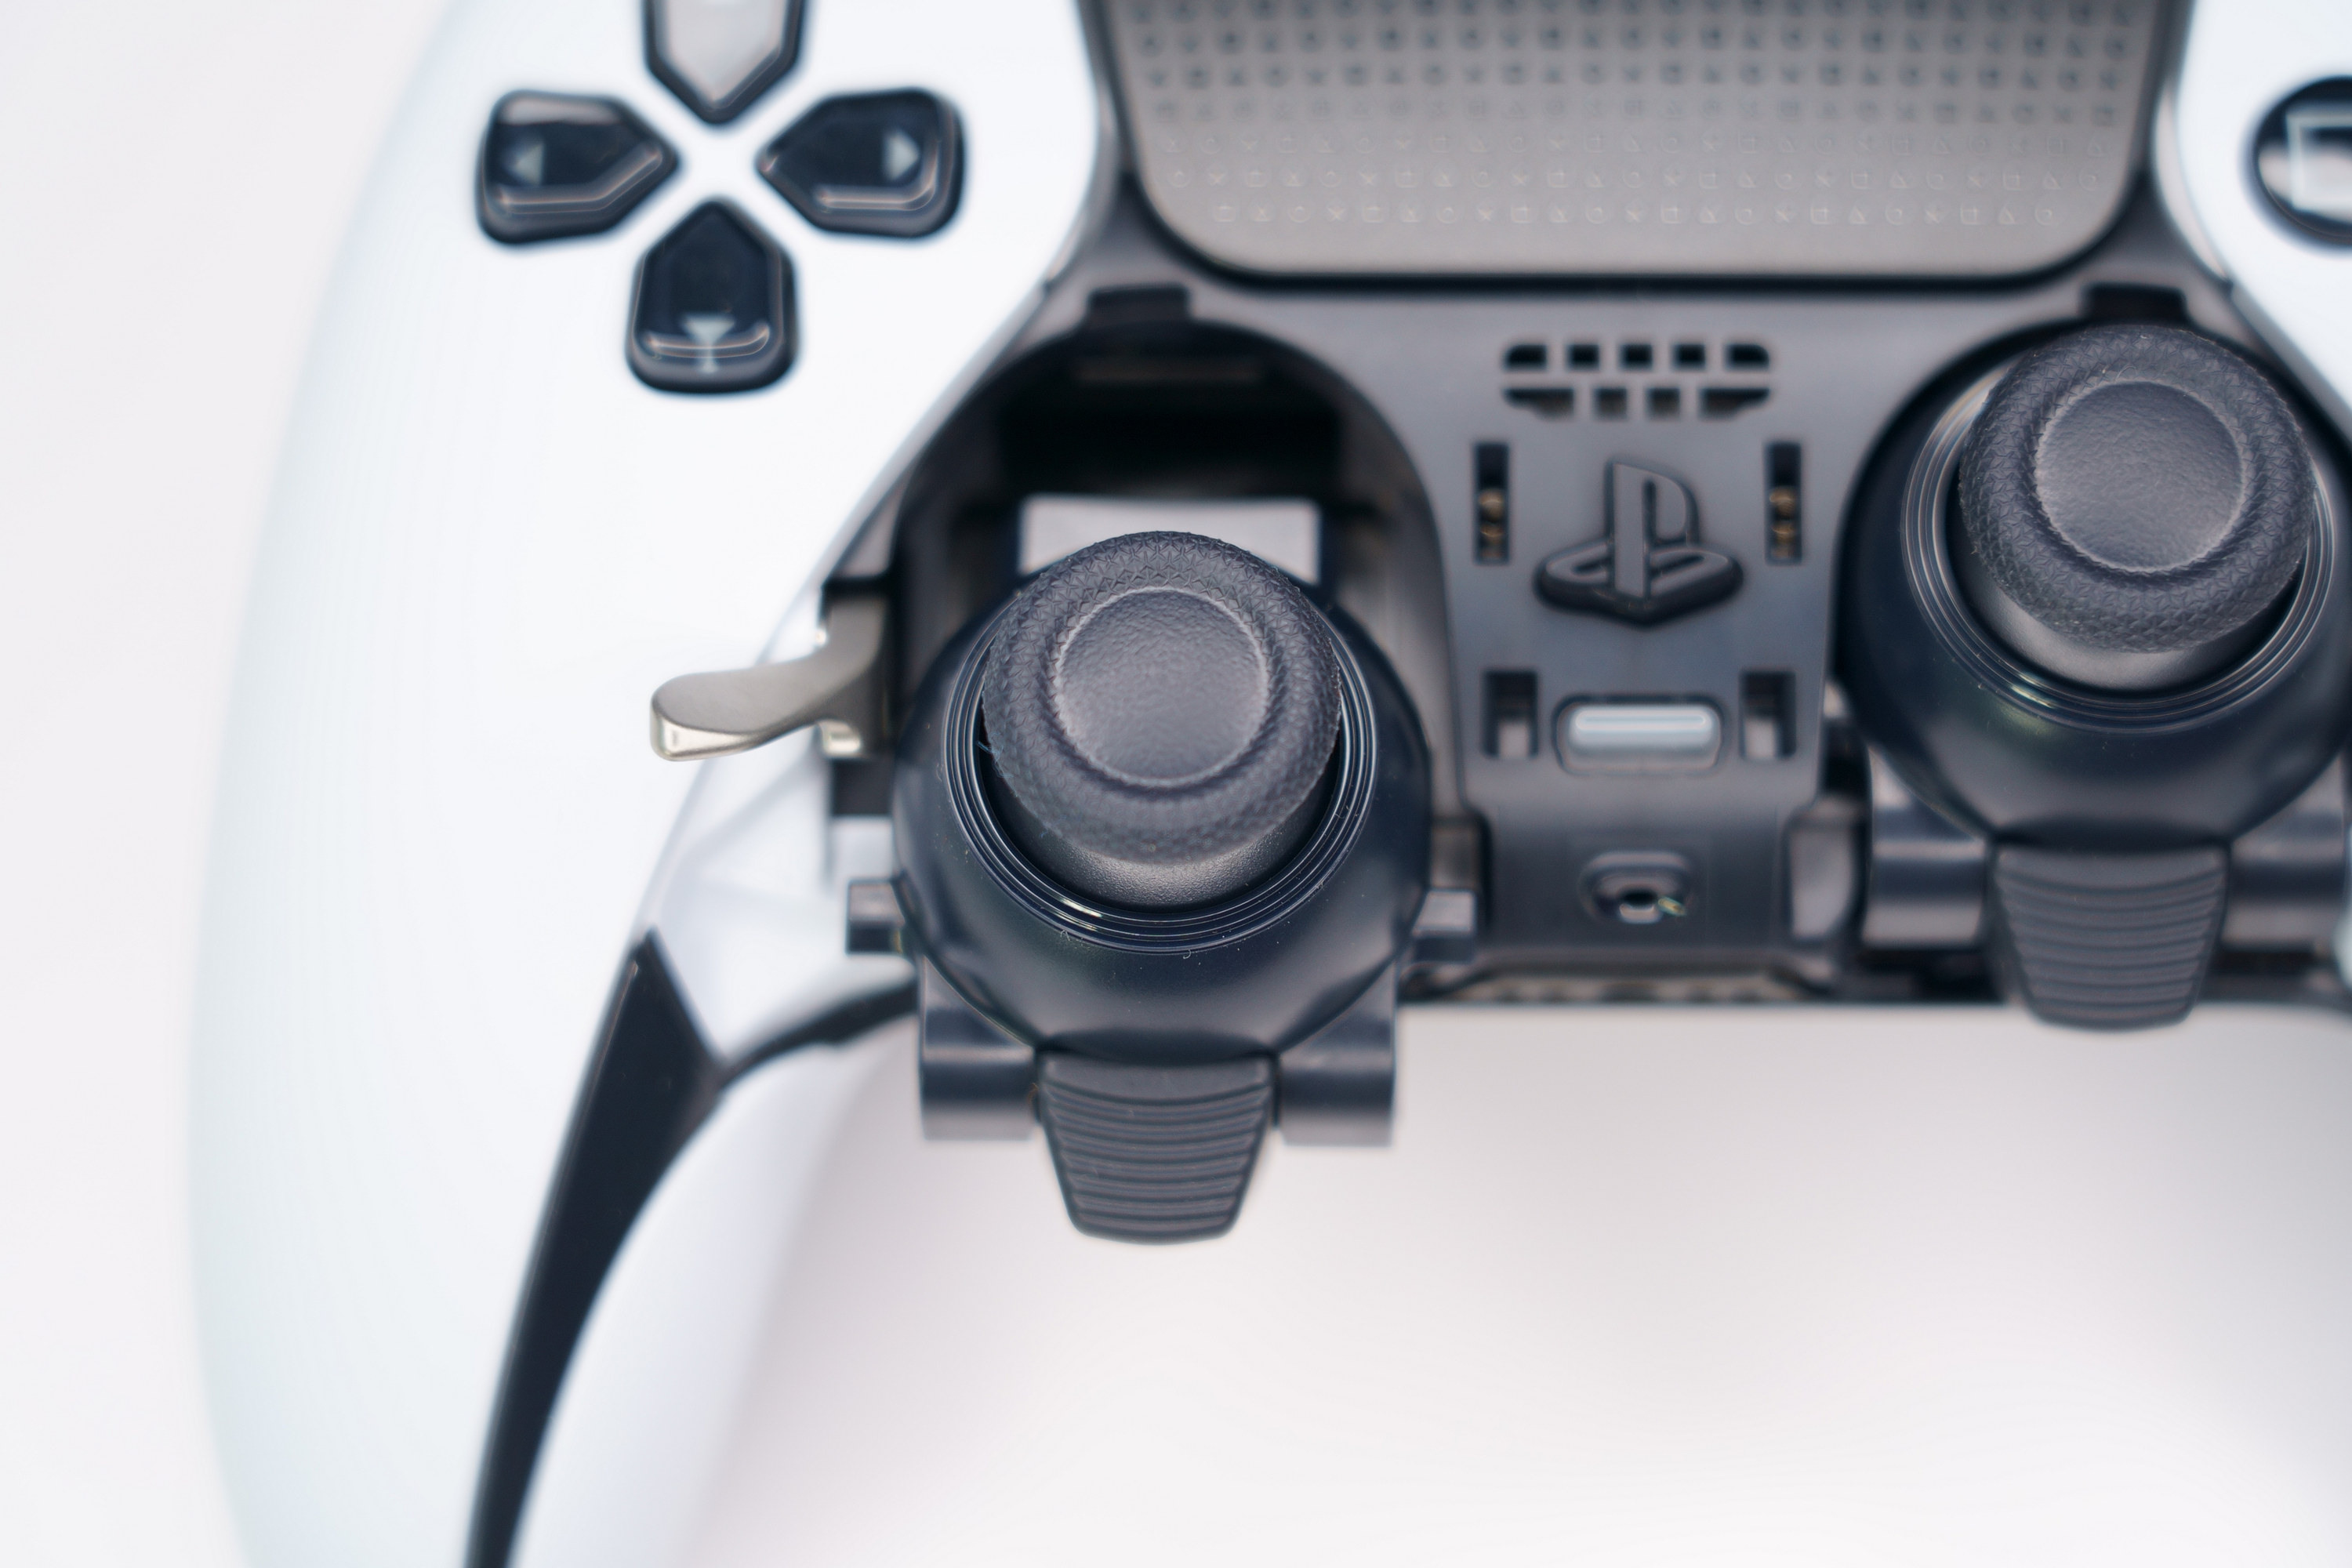 PS5 DualSense Edge 高效能控制器一手开箱 丰富自订功能满足各类型玩家需求插图52